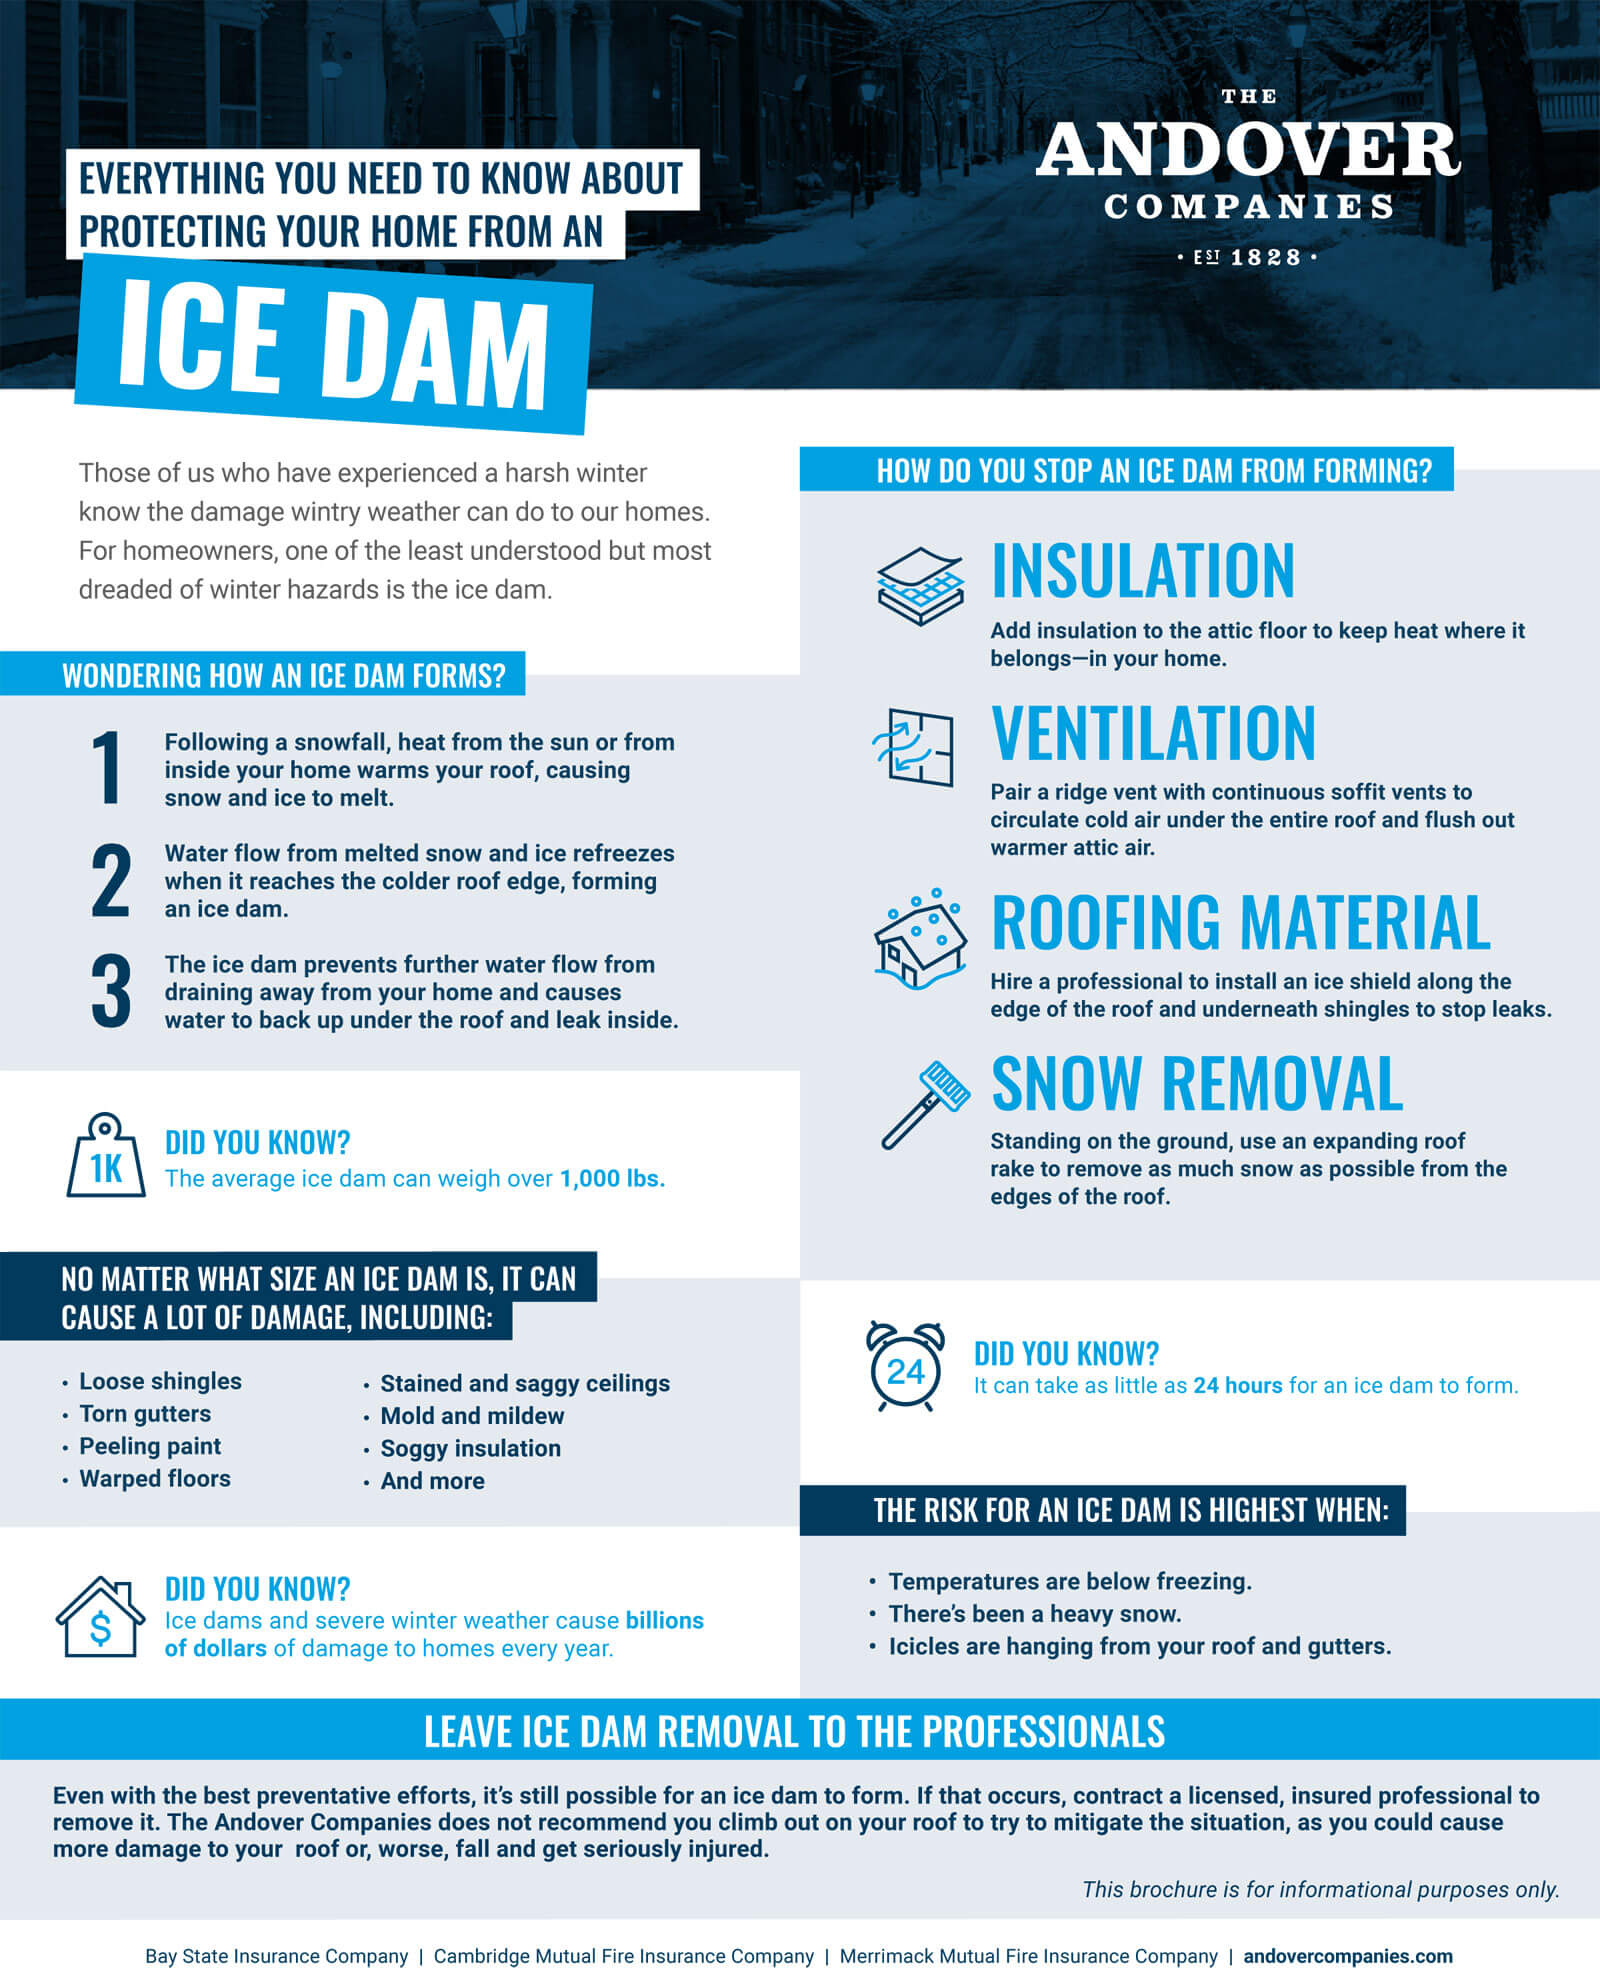 Ice Dam Infographic